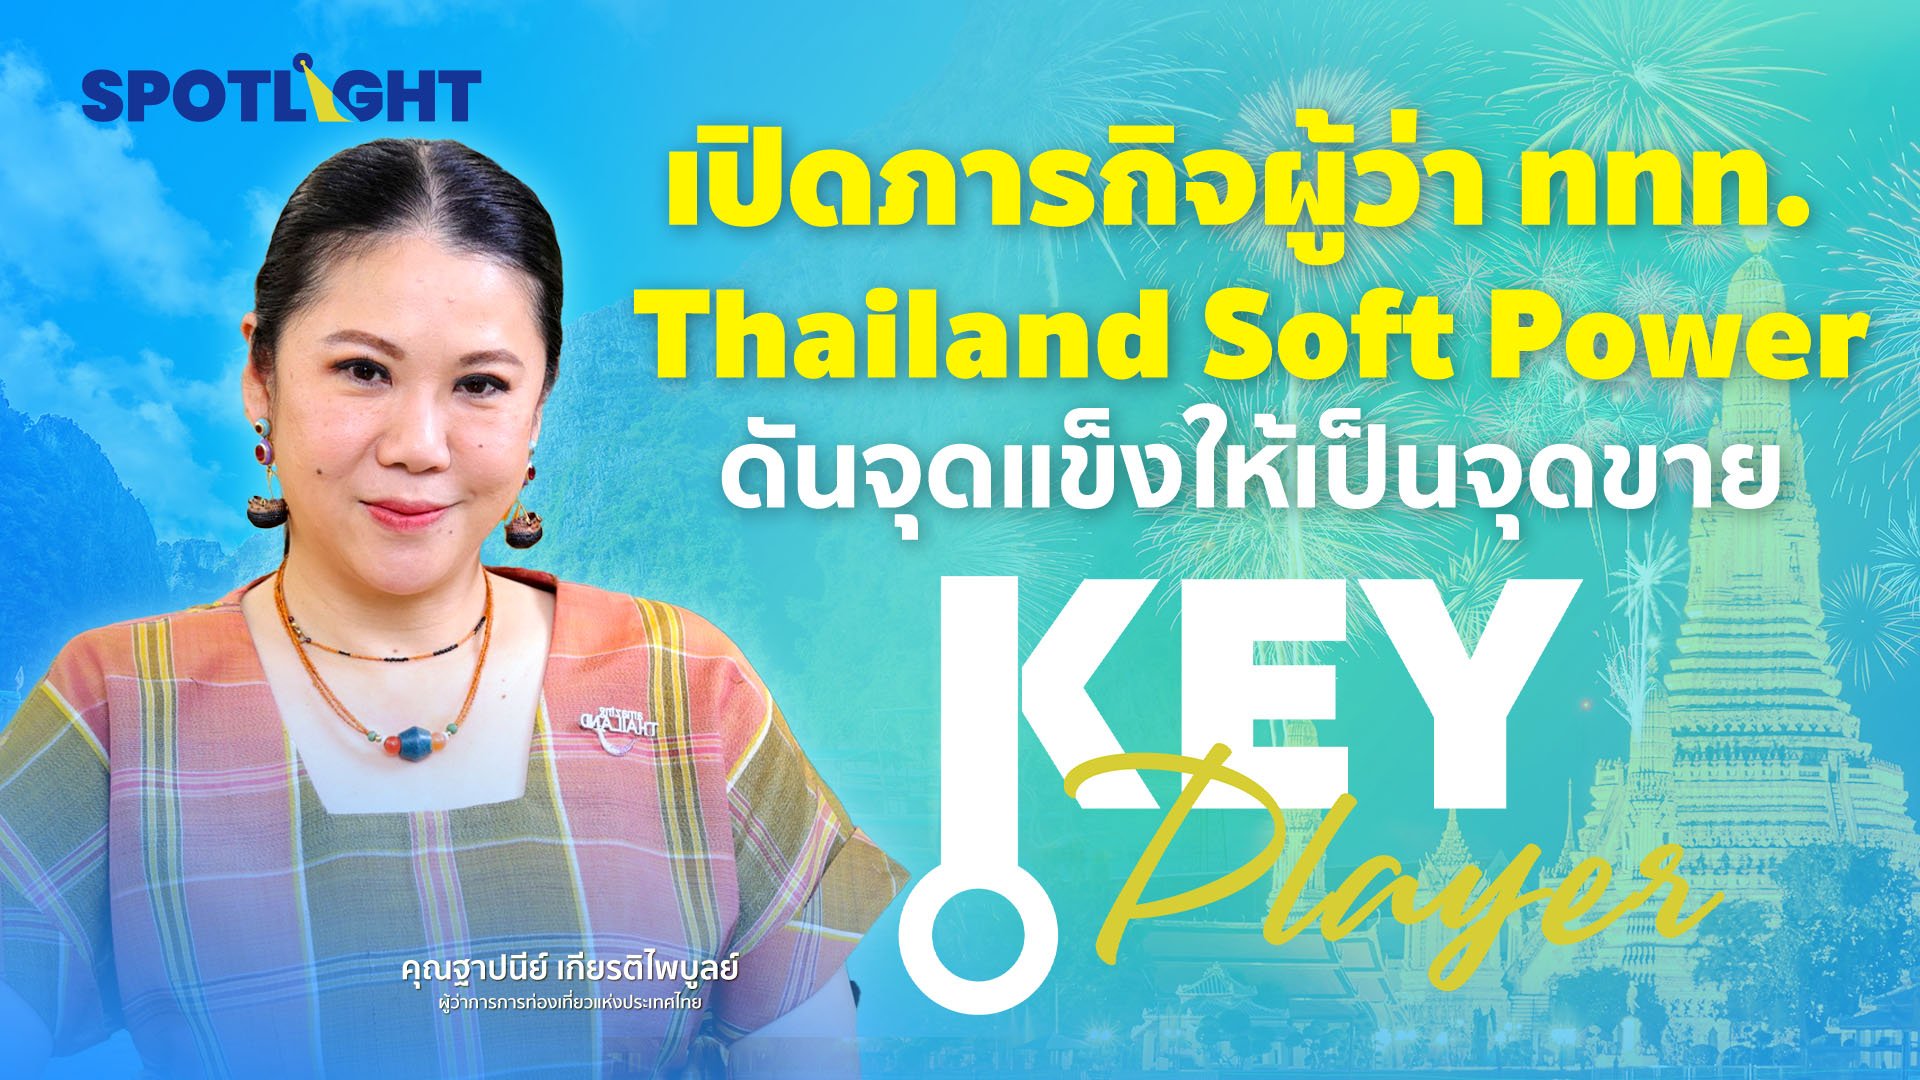 เปิดภารกิจผู้ว่า ททท. Thailand Soft Power ดันจุดแข็งให้เป็นจุดขาย | Spotlight | 30 ม.ค. 67 | AMARIN TVHD34